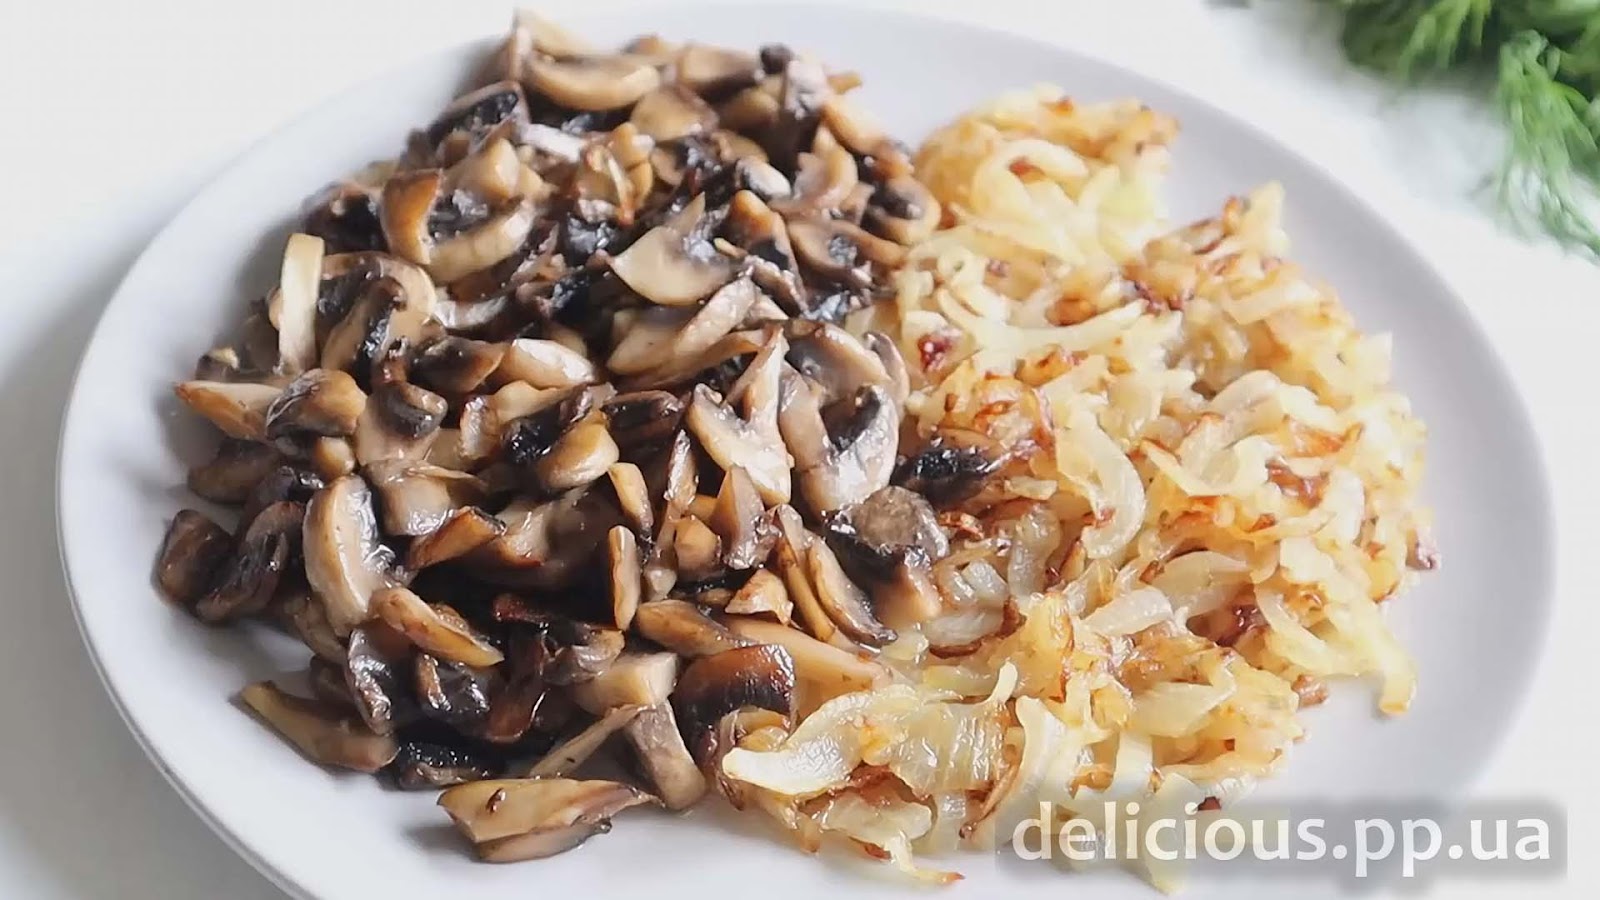 Фото приготовления рецепта: «Быстрый и вкусный Ужин с грибами - Грибной пирог (шампиньоны рецепты)» - шаг №7